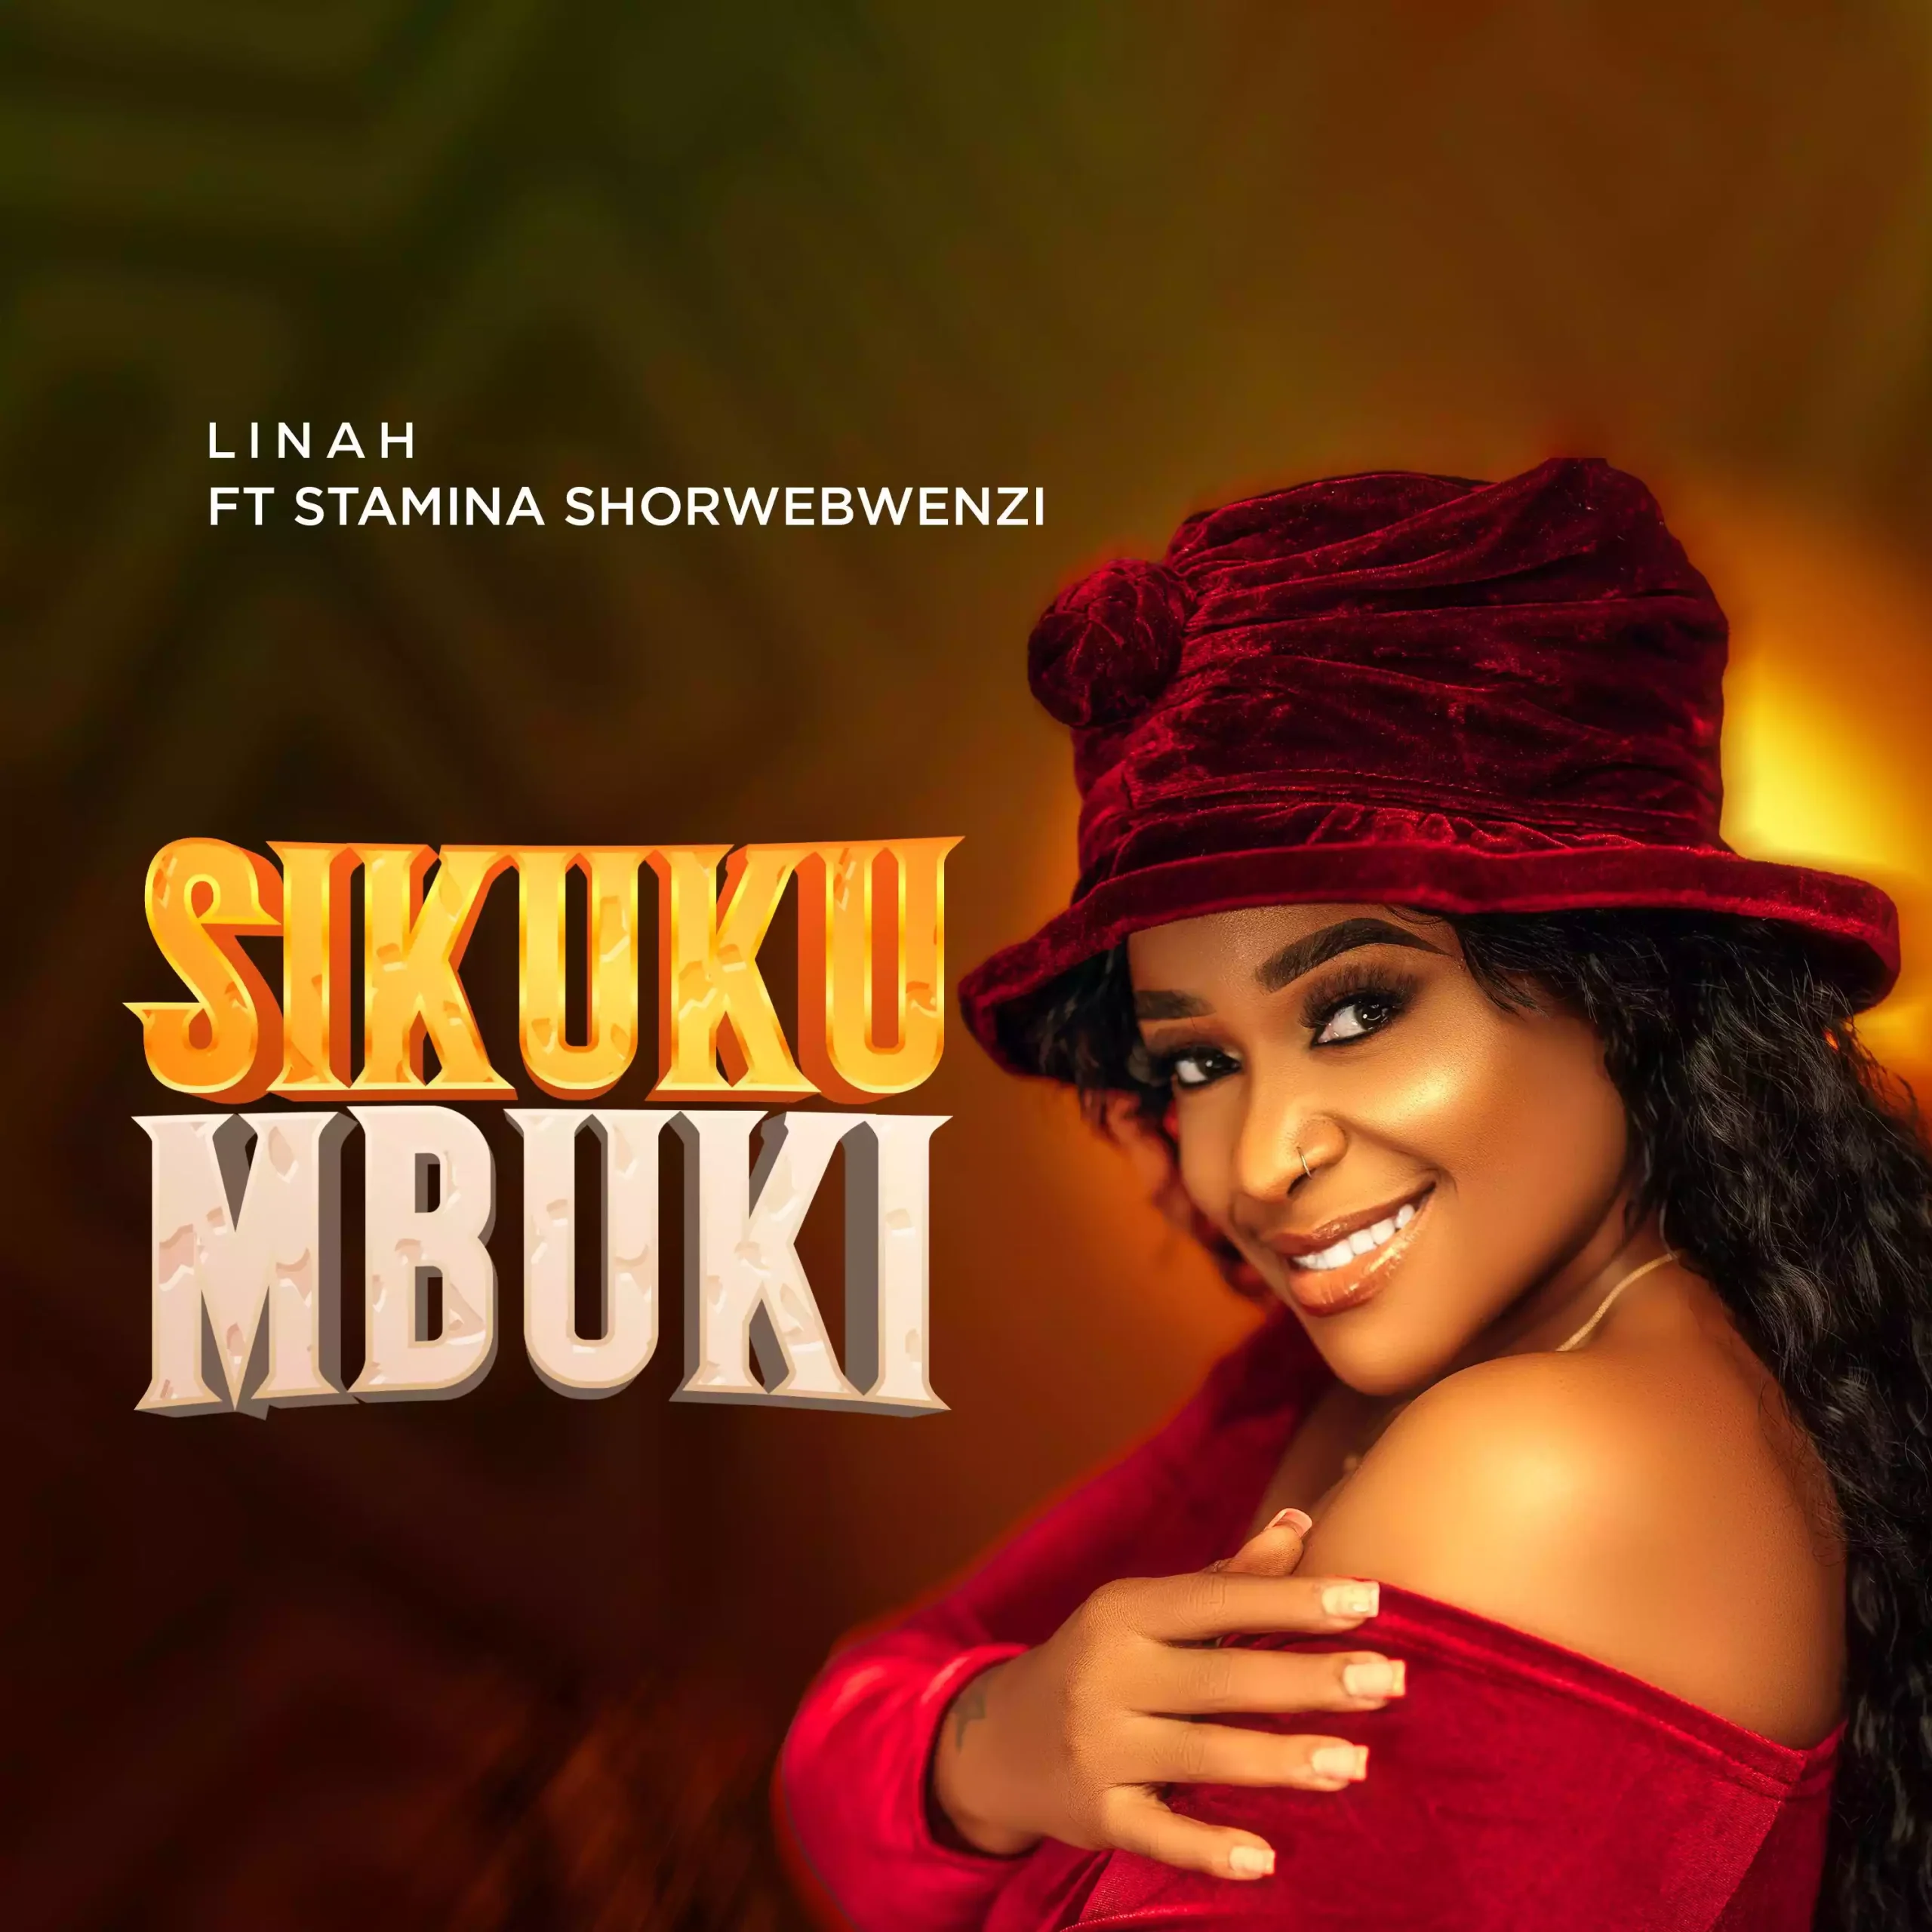 Linah ft Stamina Sikukumbuki Mp3 Download scaled